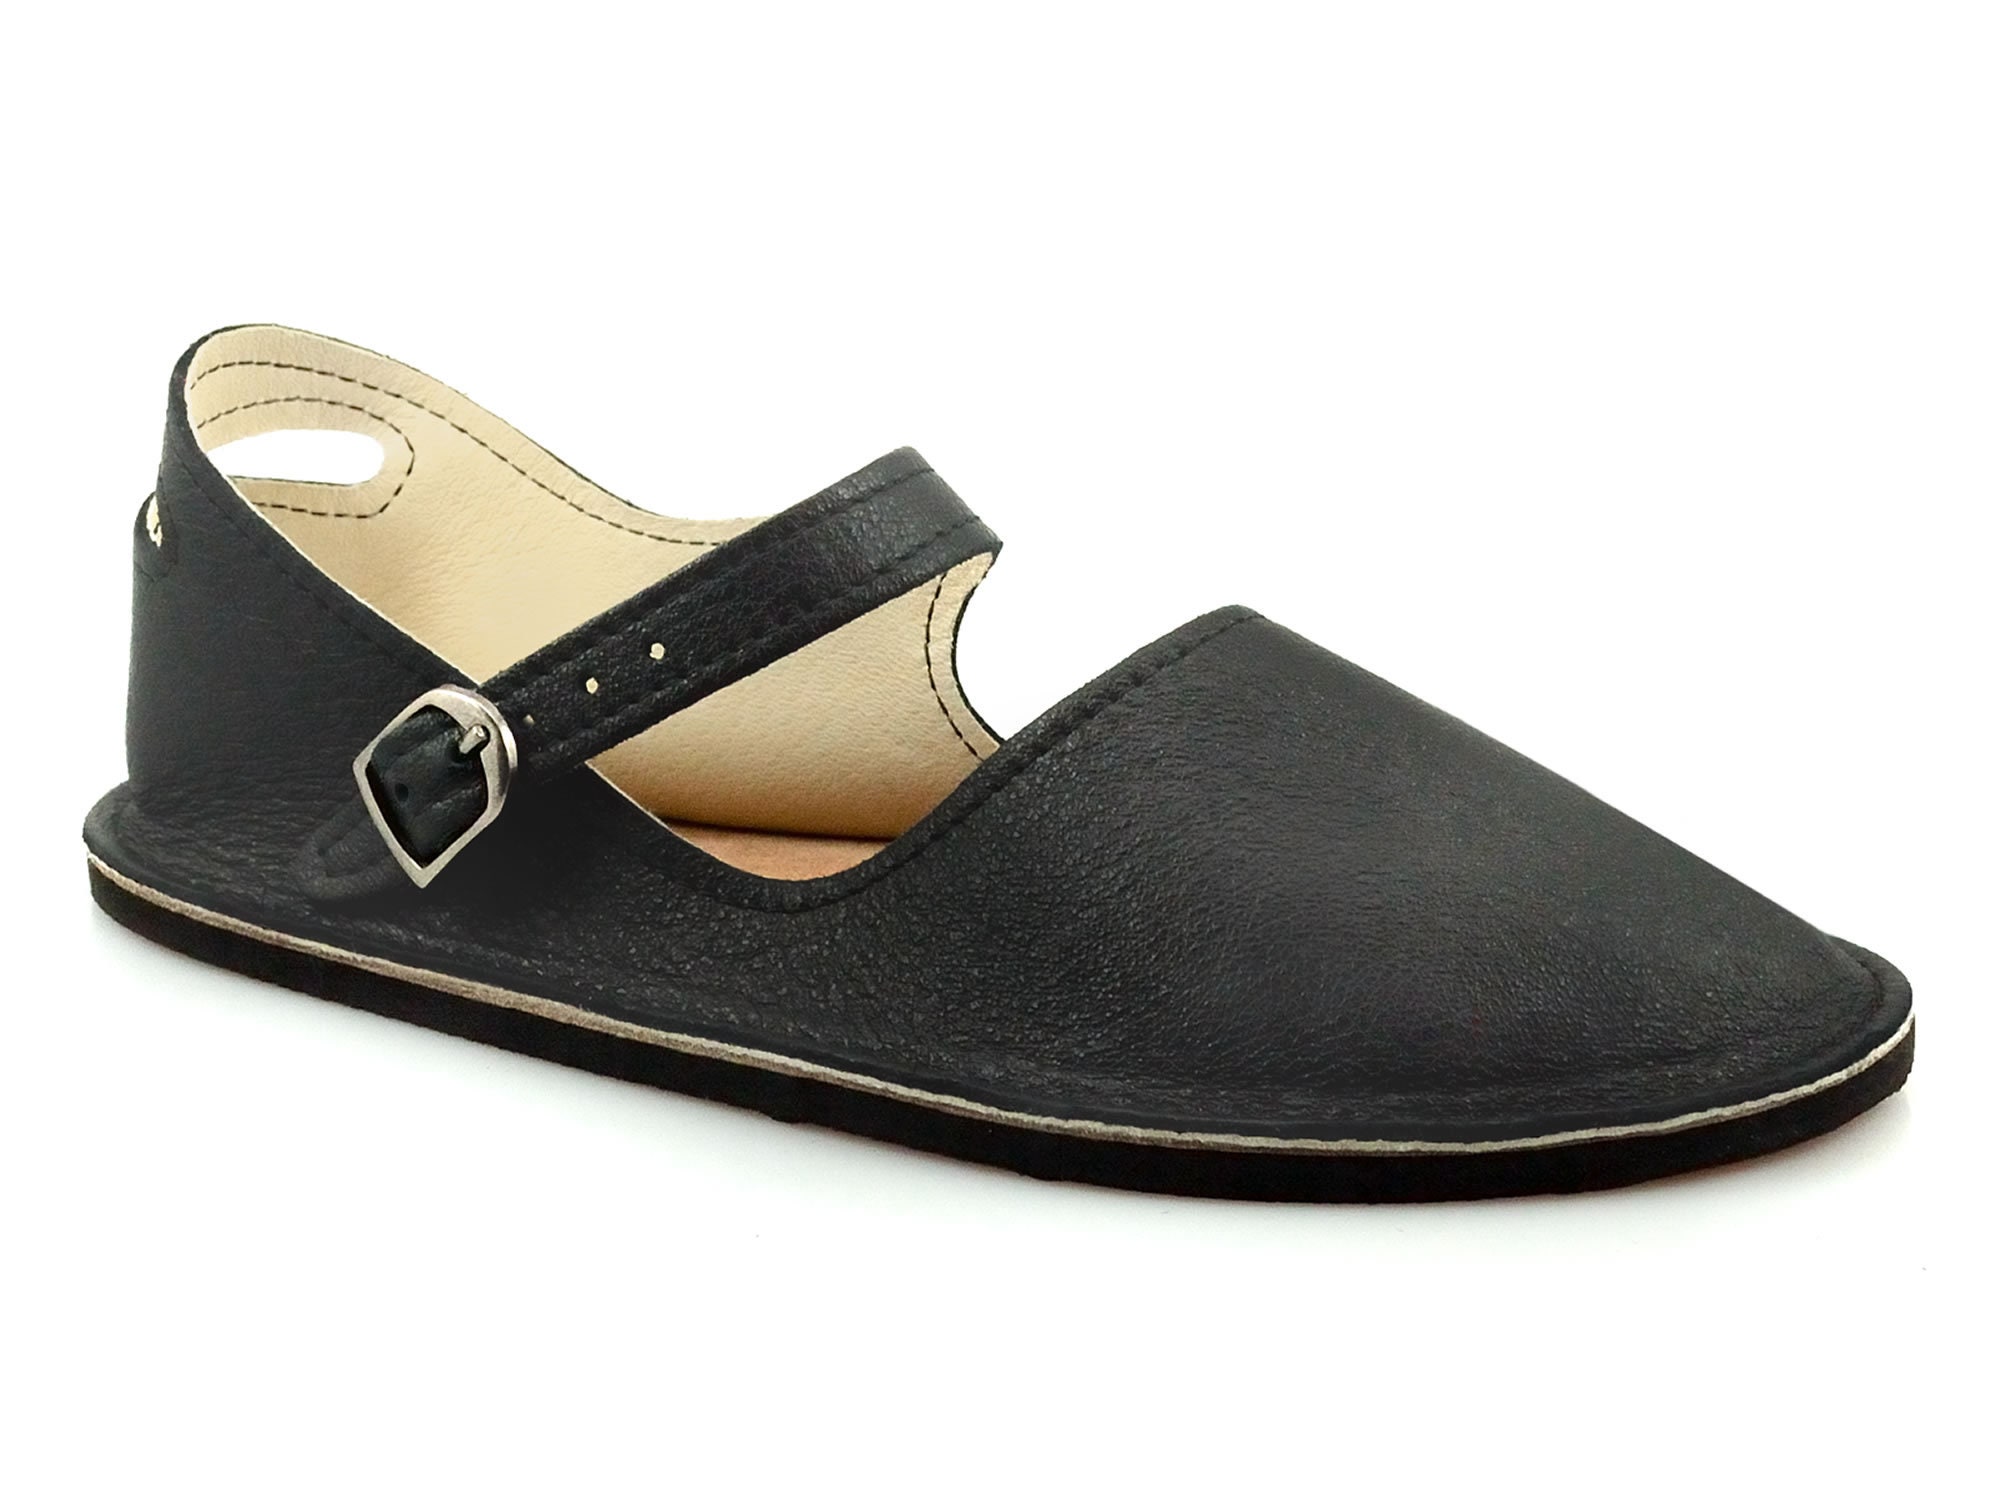 Black Mary Jane Flats Handmade Leather Shoes Minimalist - Etsy